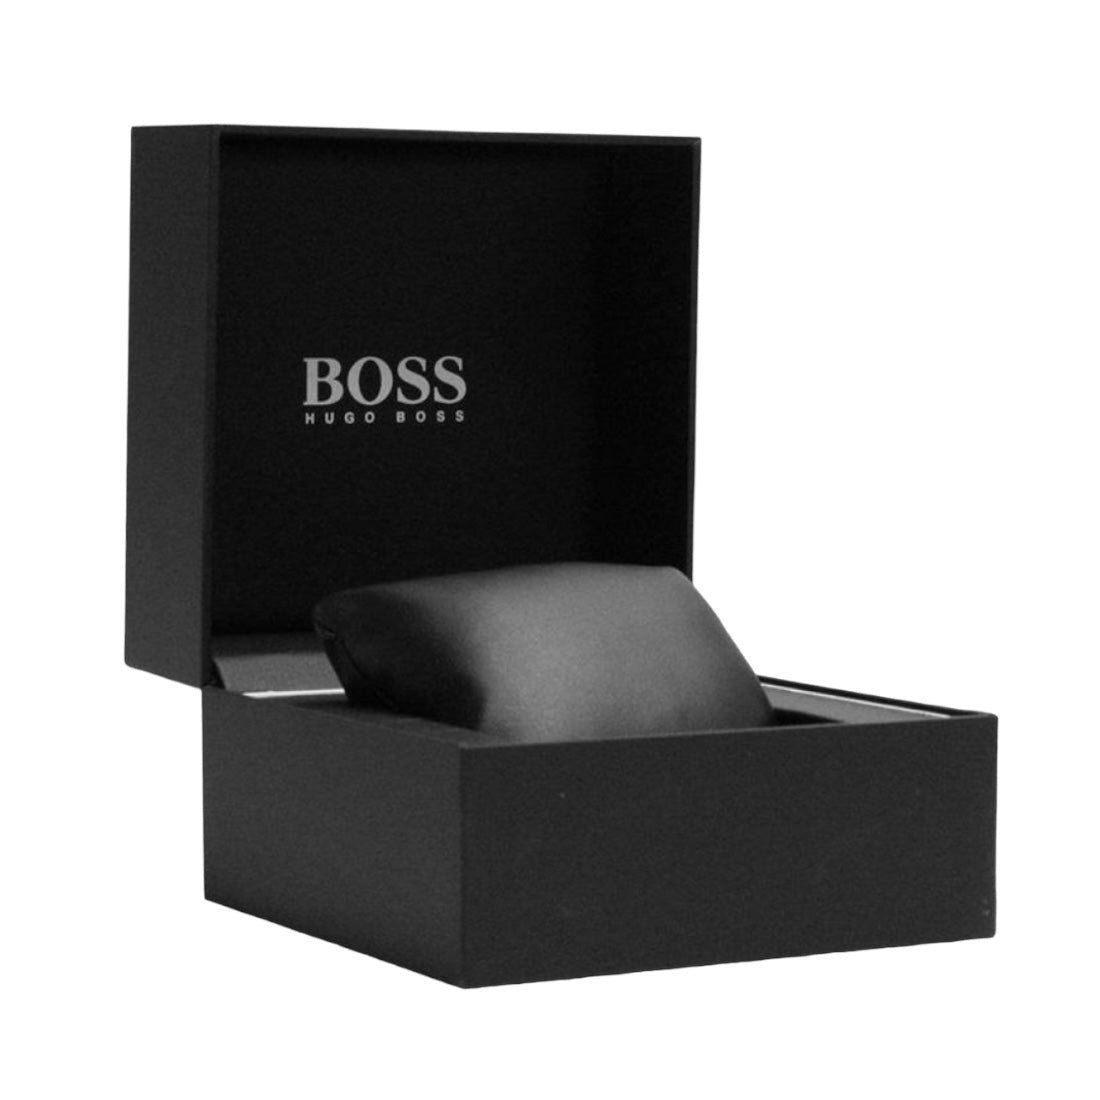 Hugo Boss 1513280 Men's Watch